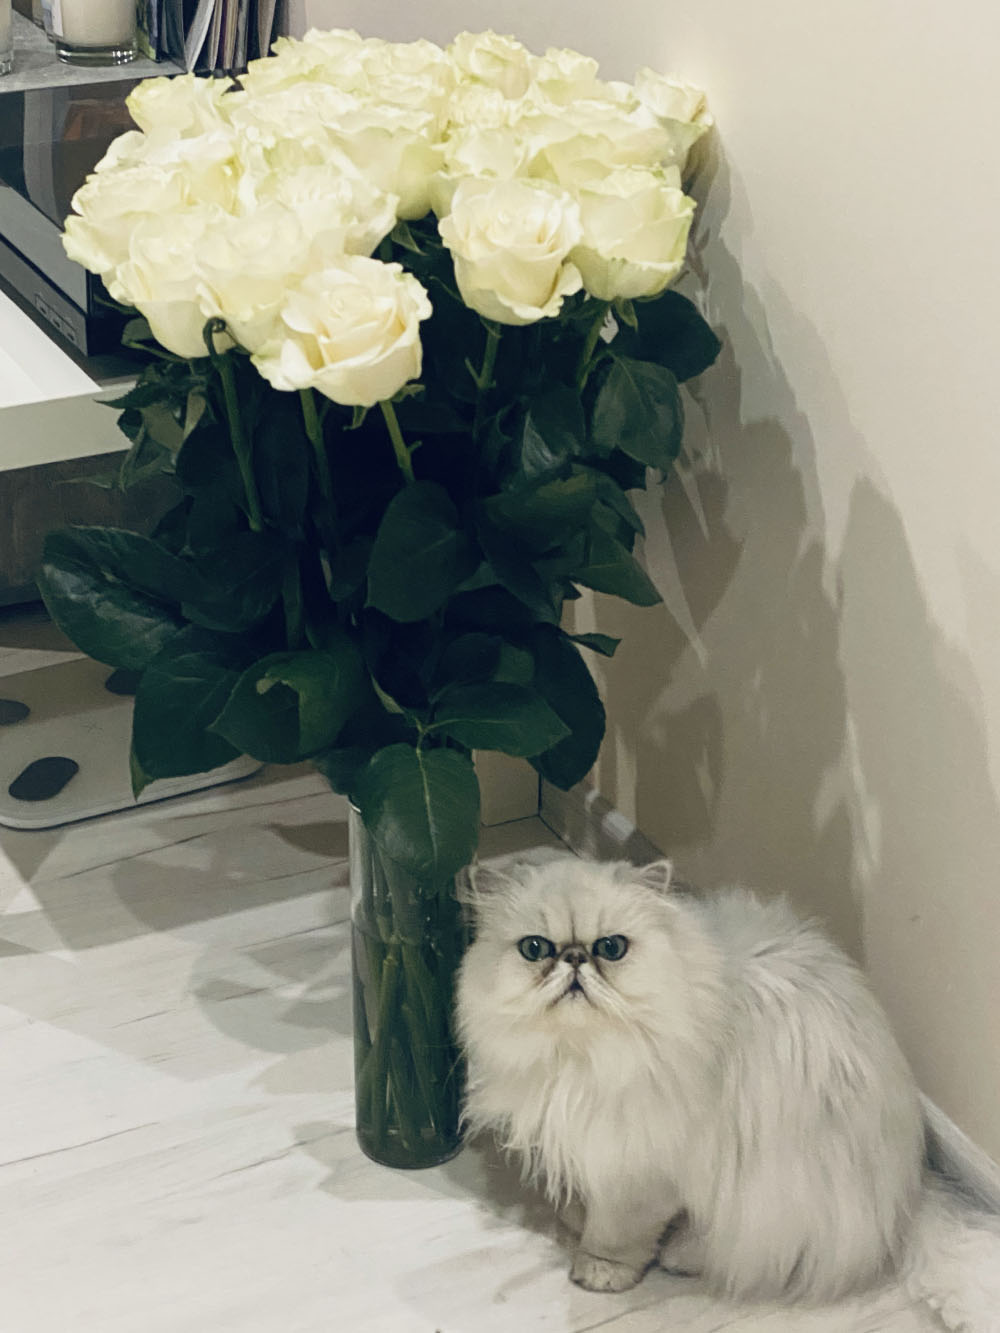 Три любови на одном фото: цветы, коты и любимое место в квартире. Фото из гостиной, весы стоят под столиком, на котором виниловый проигрыватель. Рядом видны пластинки и свечи